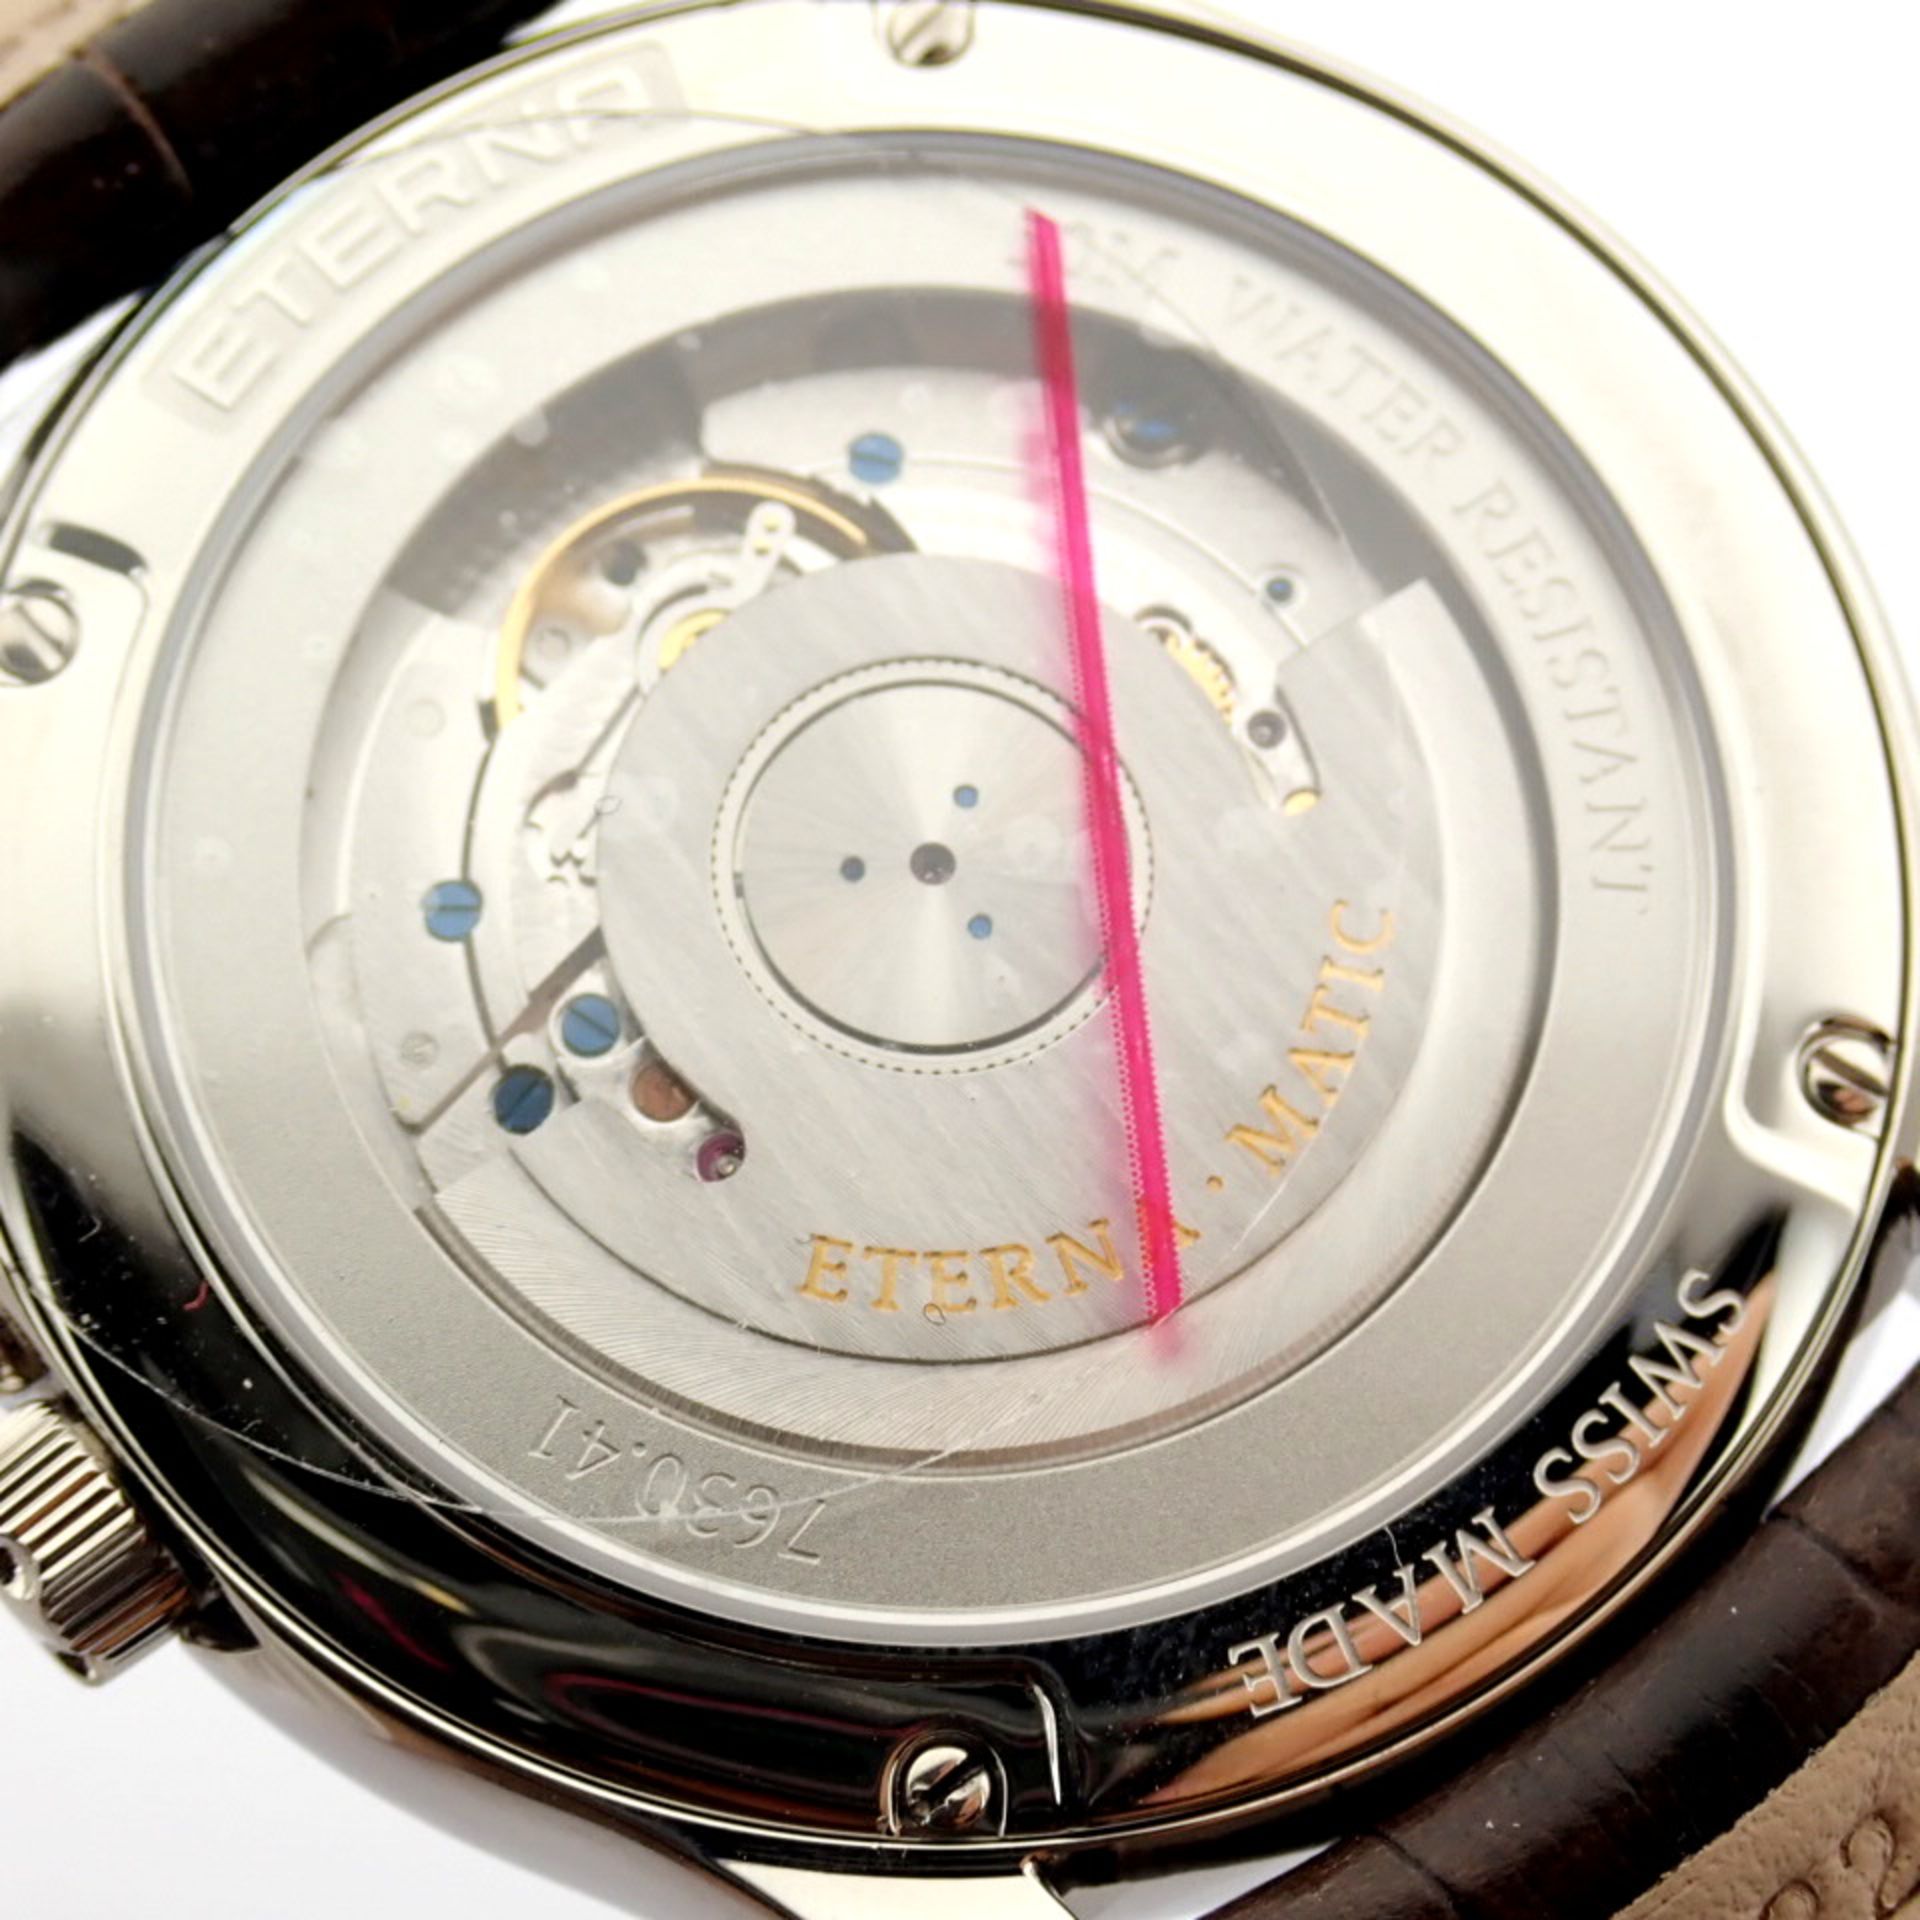 Eterna / Vaughan Big Date 7630.41 - Gentlmen's Steel Wrist Watch - Image 3 of 11